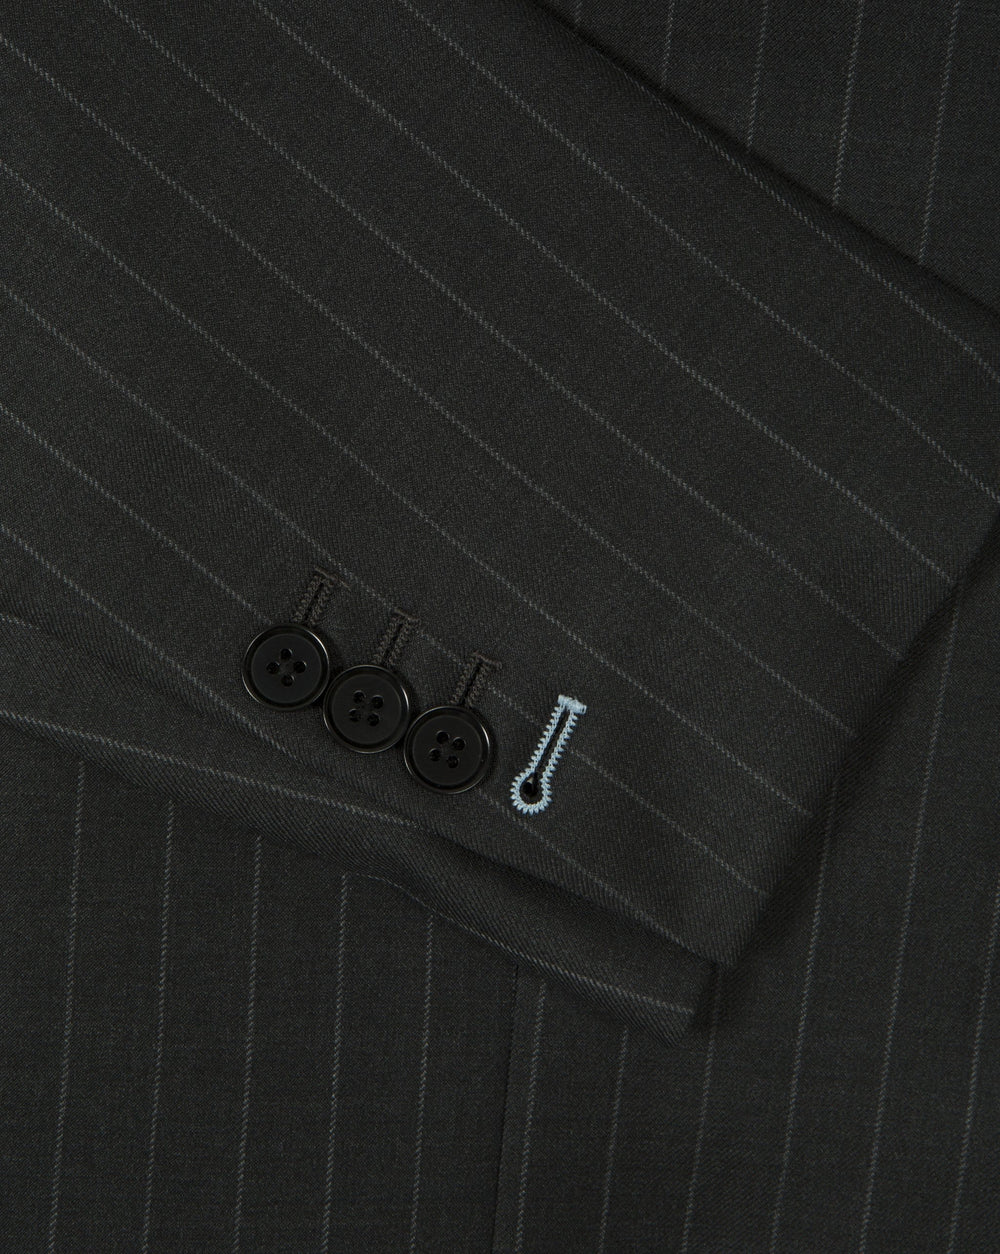 Charcoal Grey Pinstripe Suit - Mark marengo